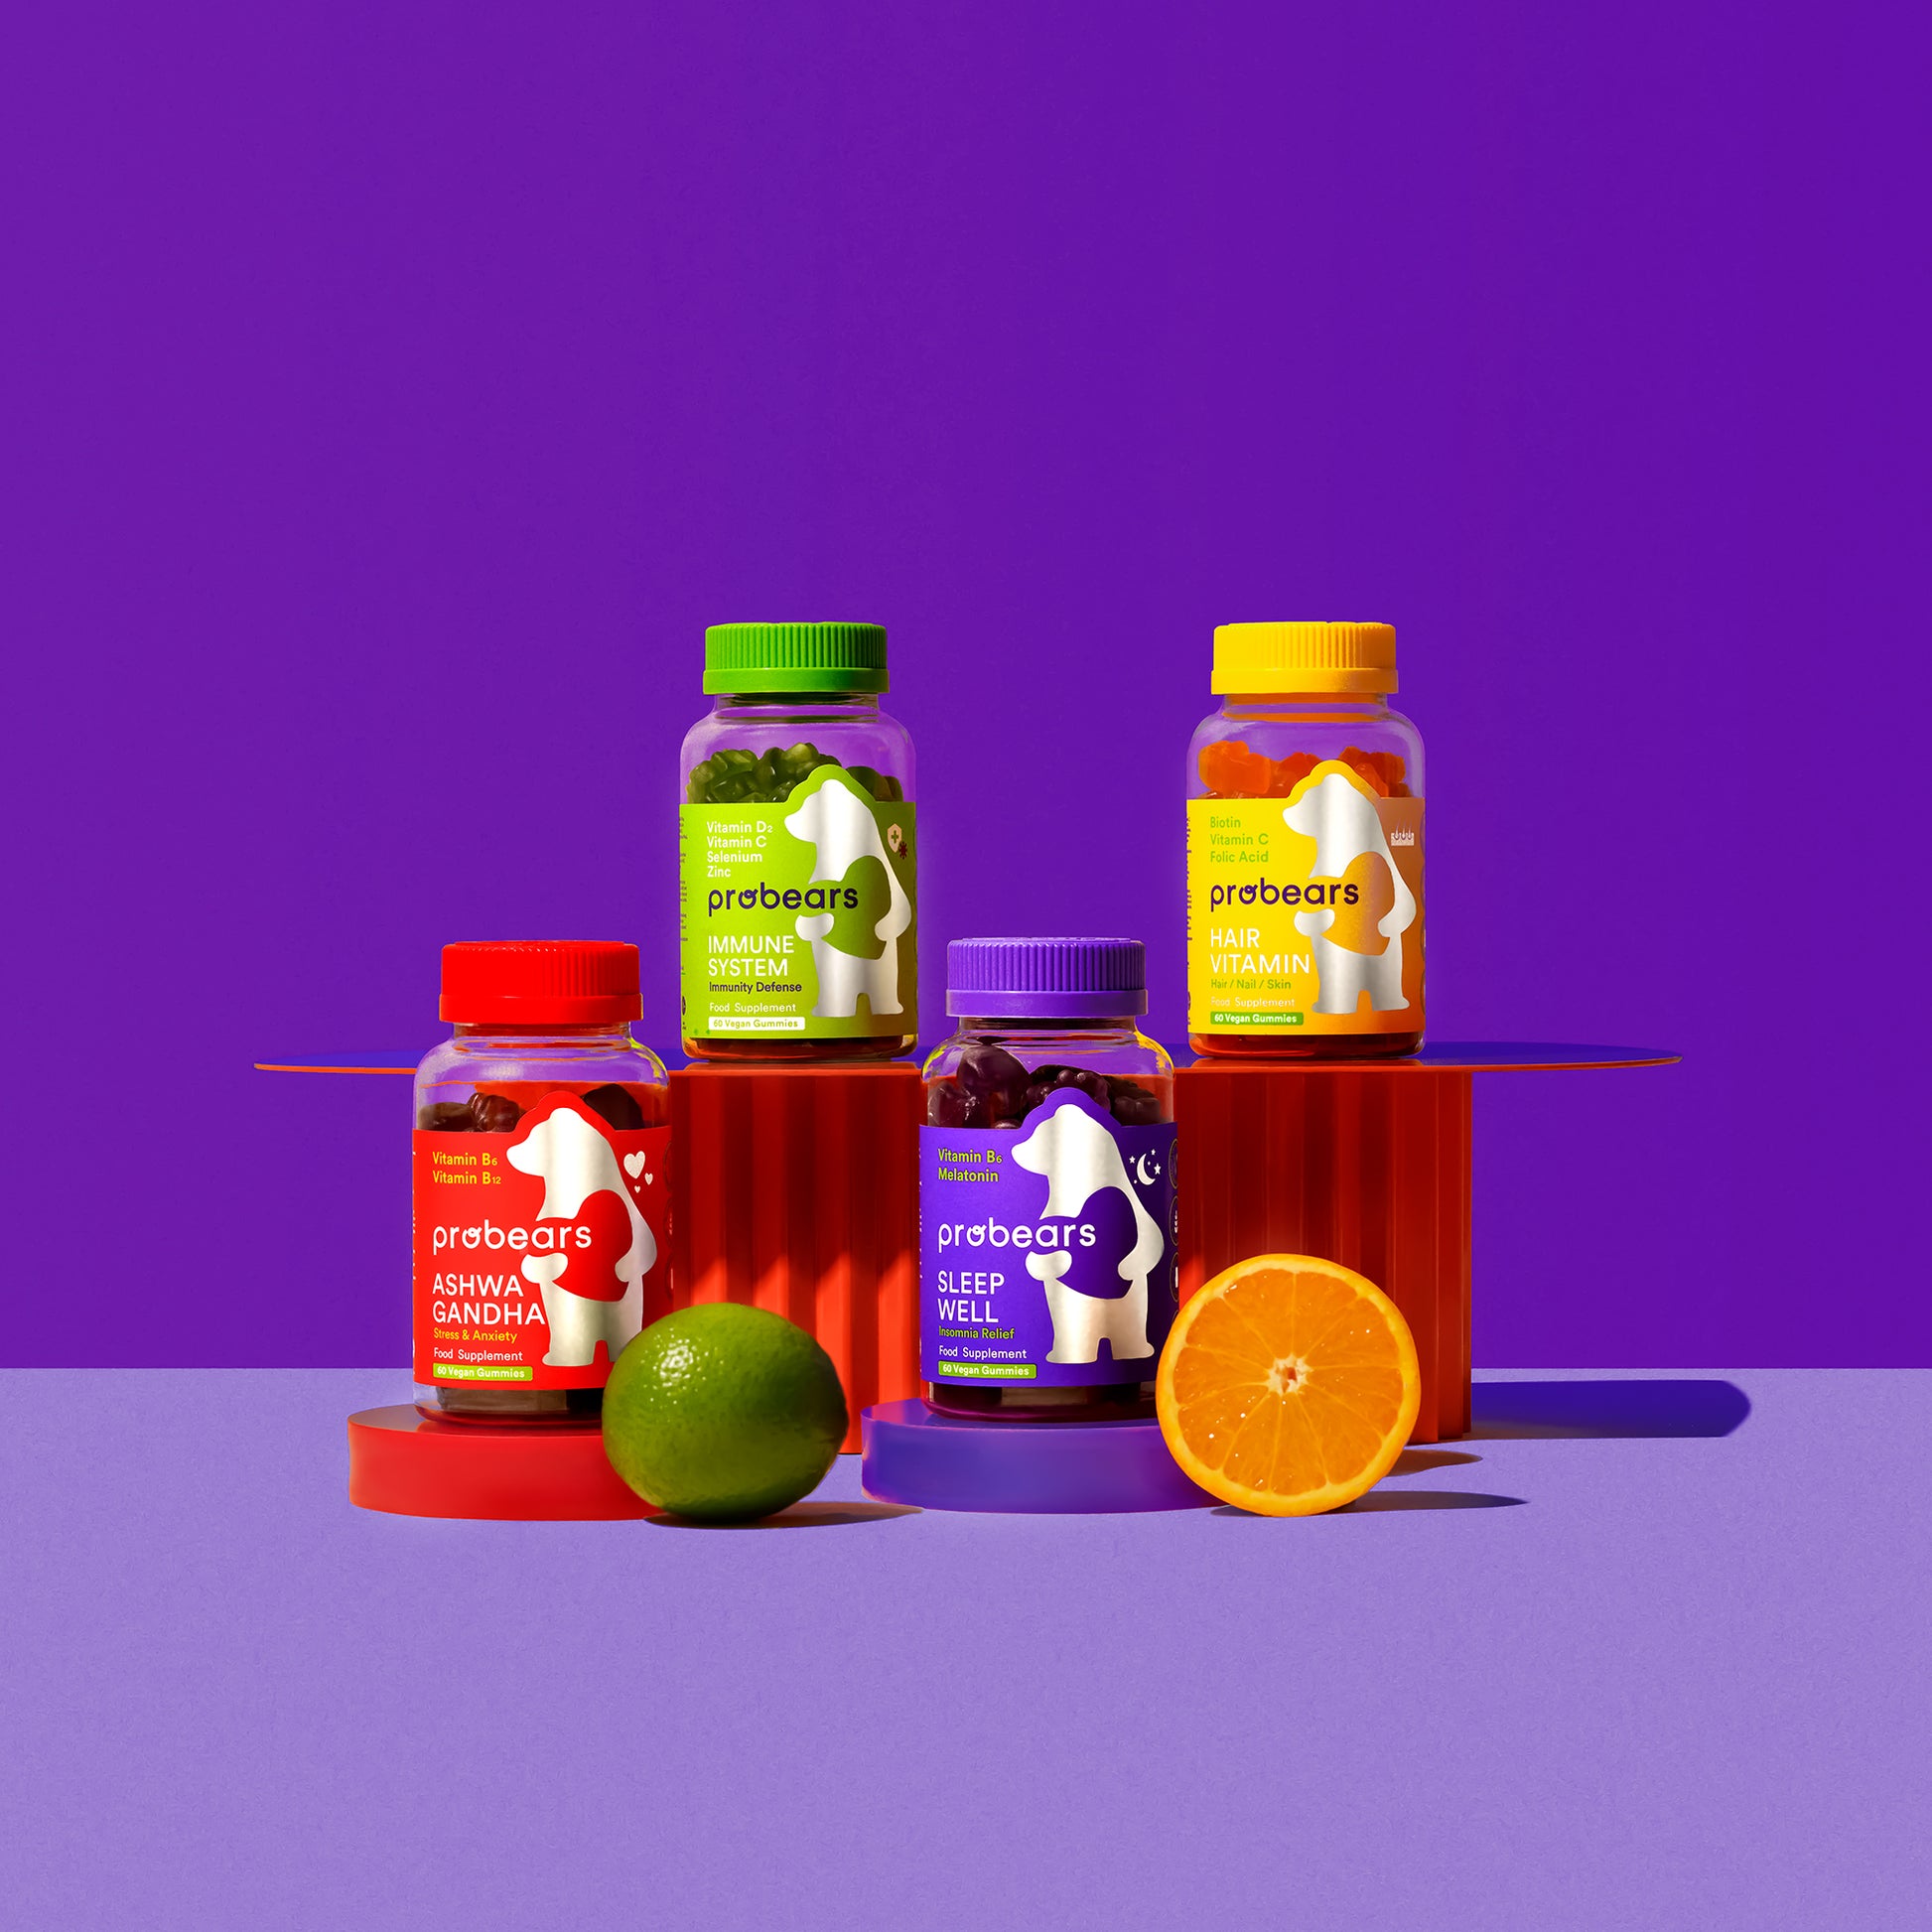 Buntes Arrangement von Probears Vitamin-Gummibärchen auf lila Hintergrund, hervorgehoben für Gesundheit und Wellness.